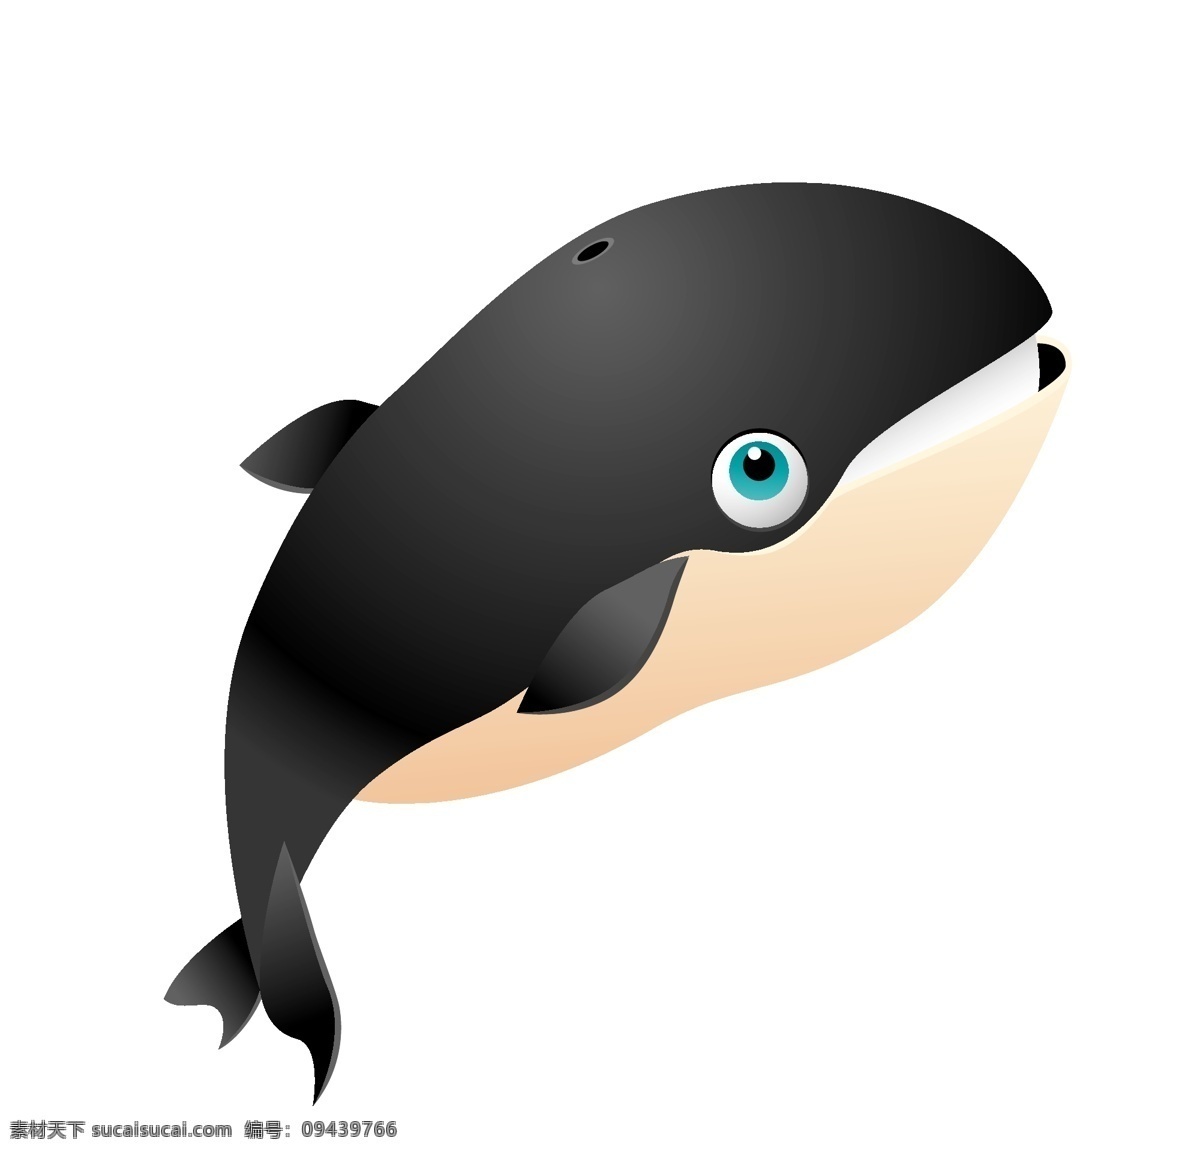 矢量 黑 鲸鱼 动物 模板 素材图片 卡通 矢量动物 卡通动物